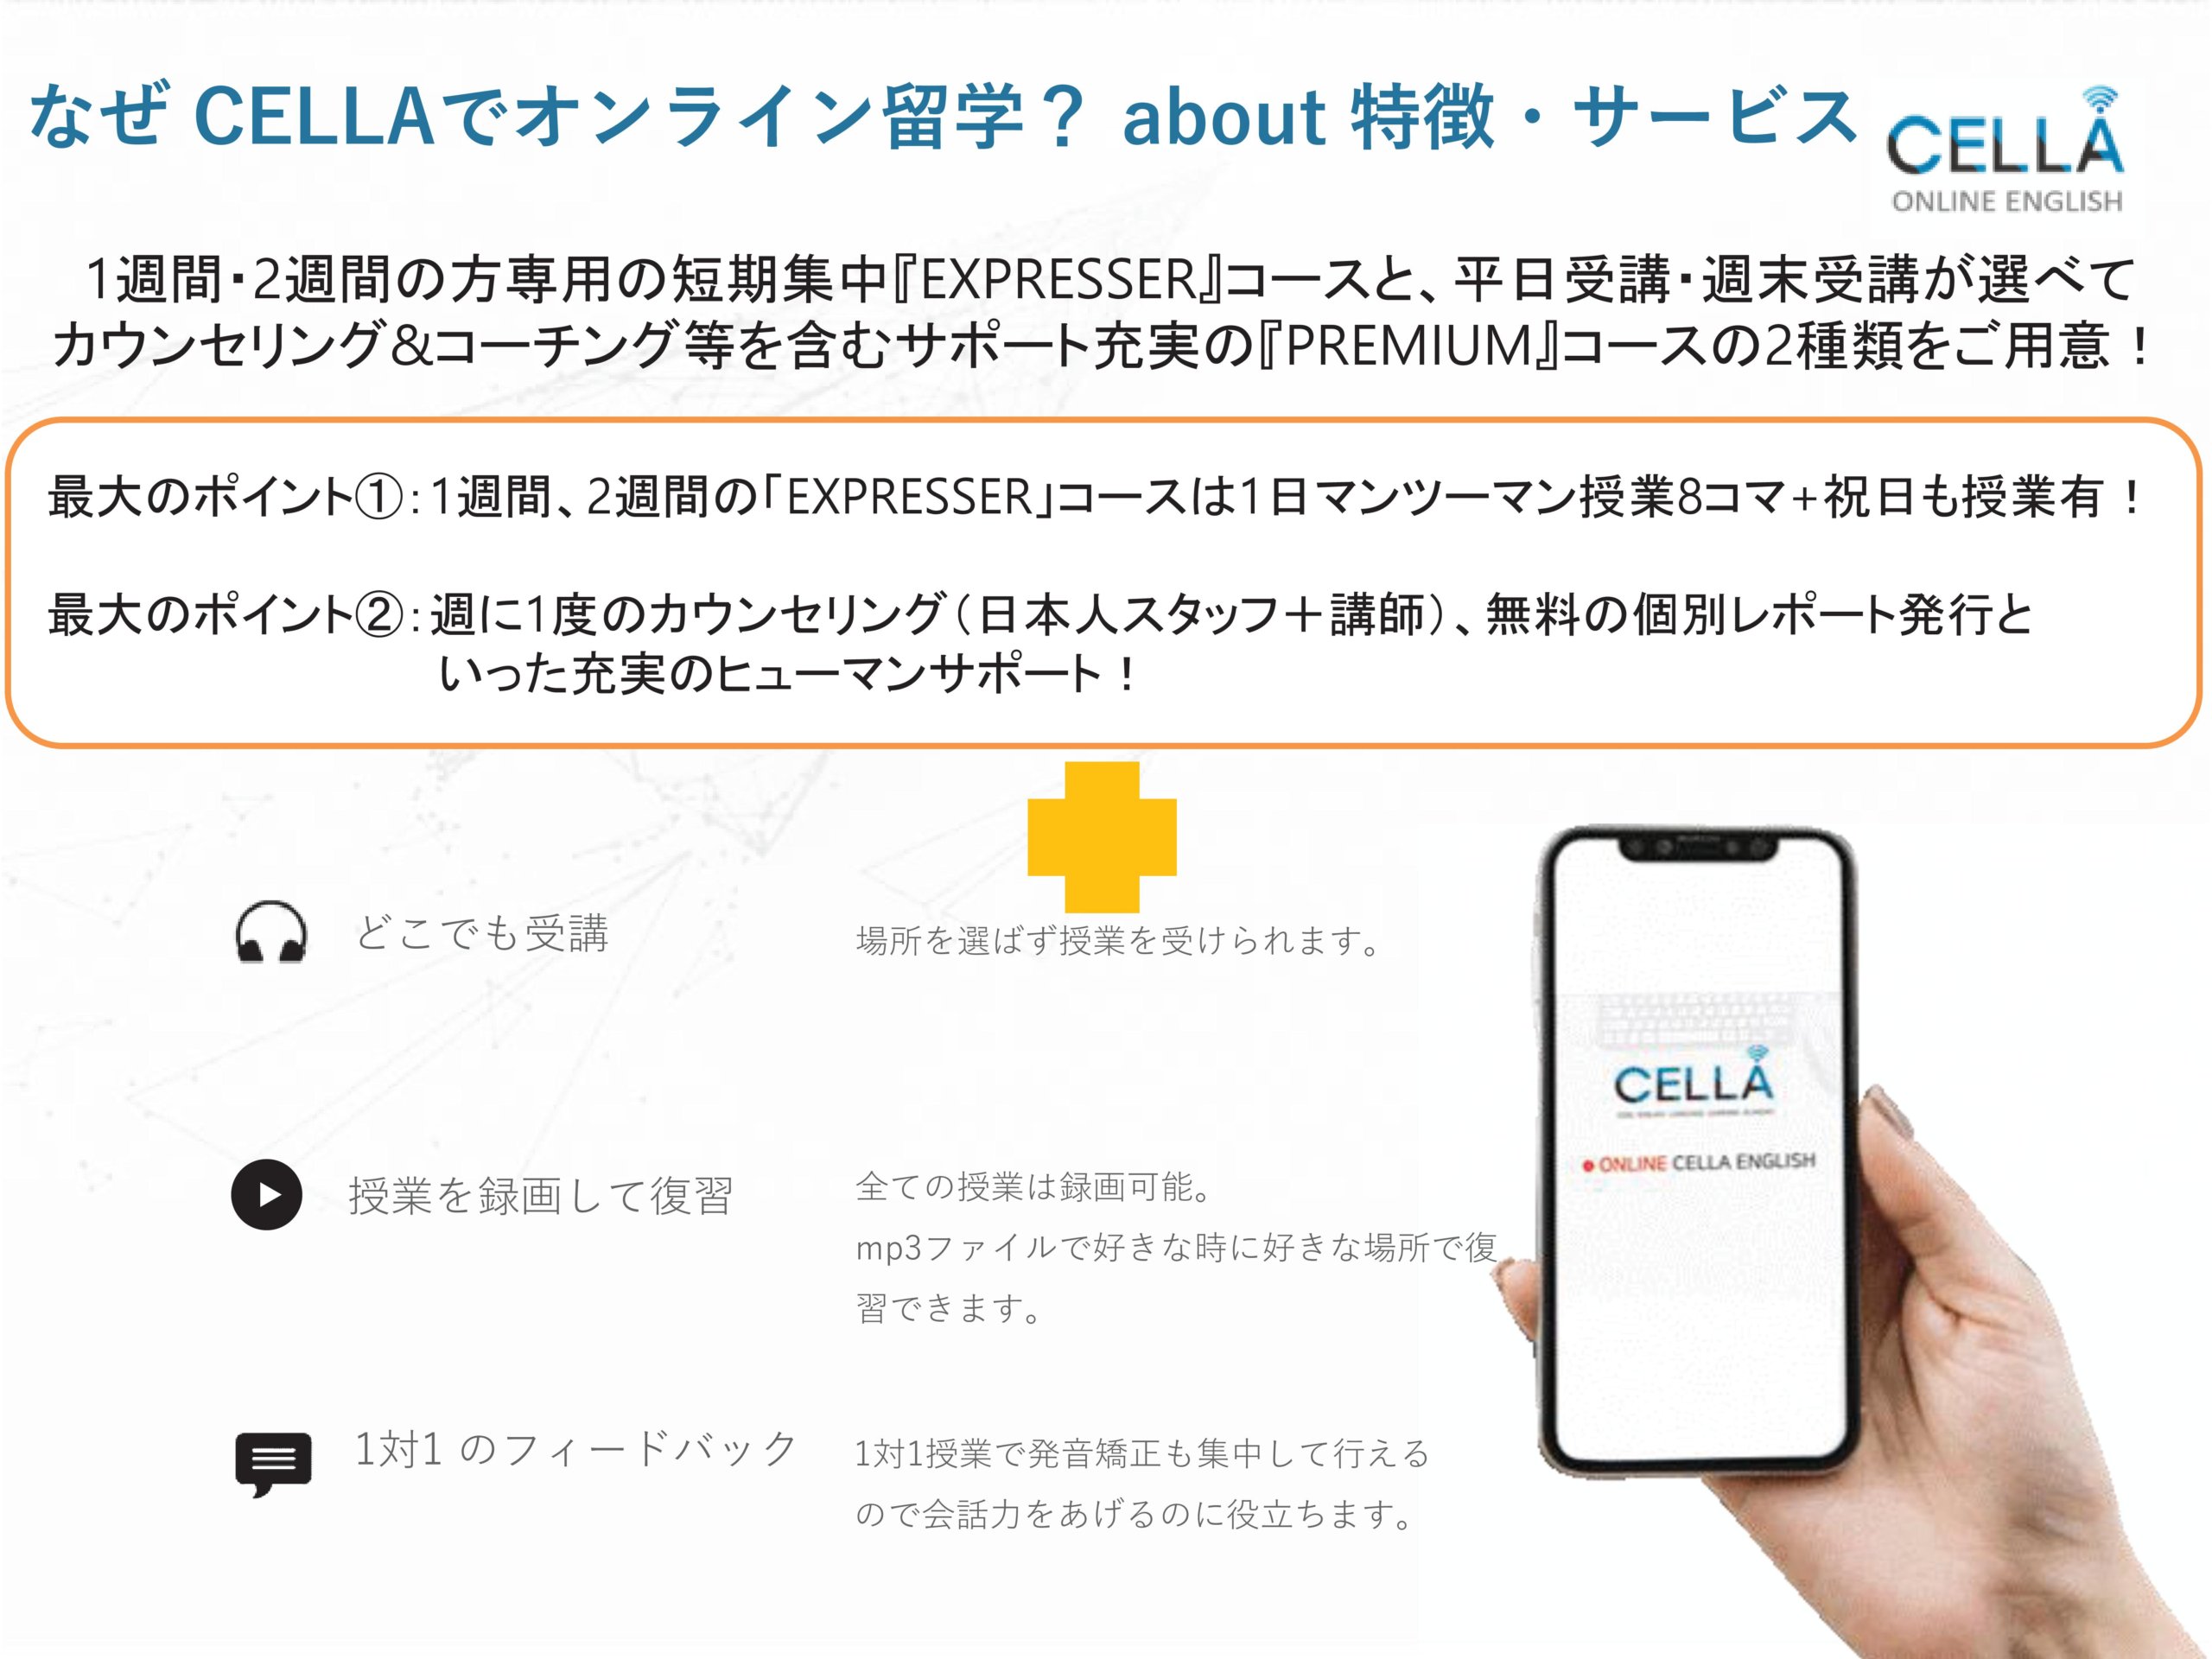 CLLAのオンライン